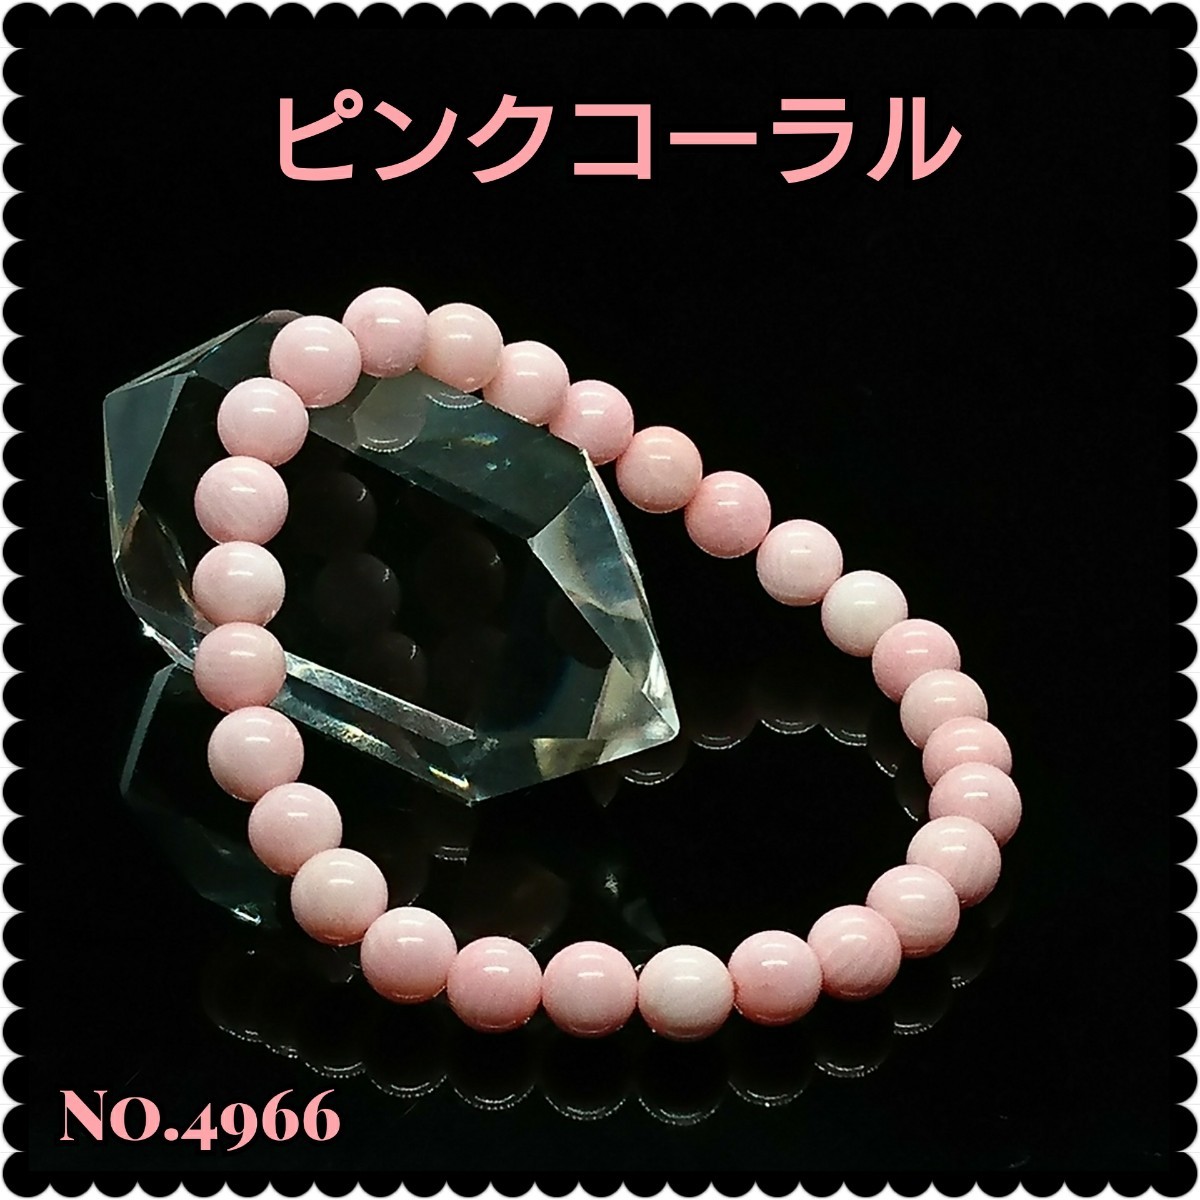 ★ピンクコーラル(桃色珊瑚)/ブレスレット 6㎜ 天然石パワーストーン